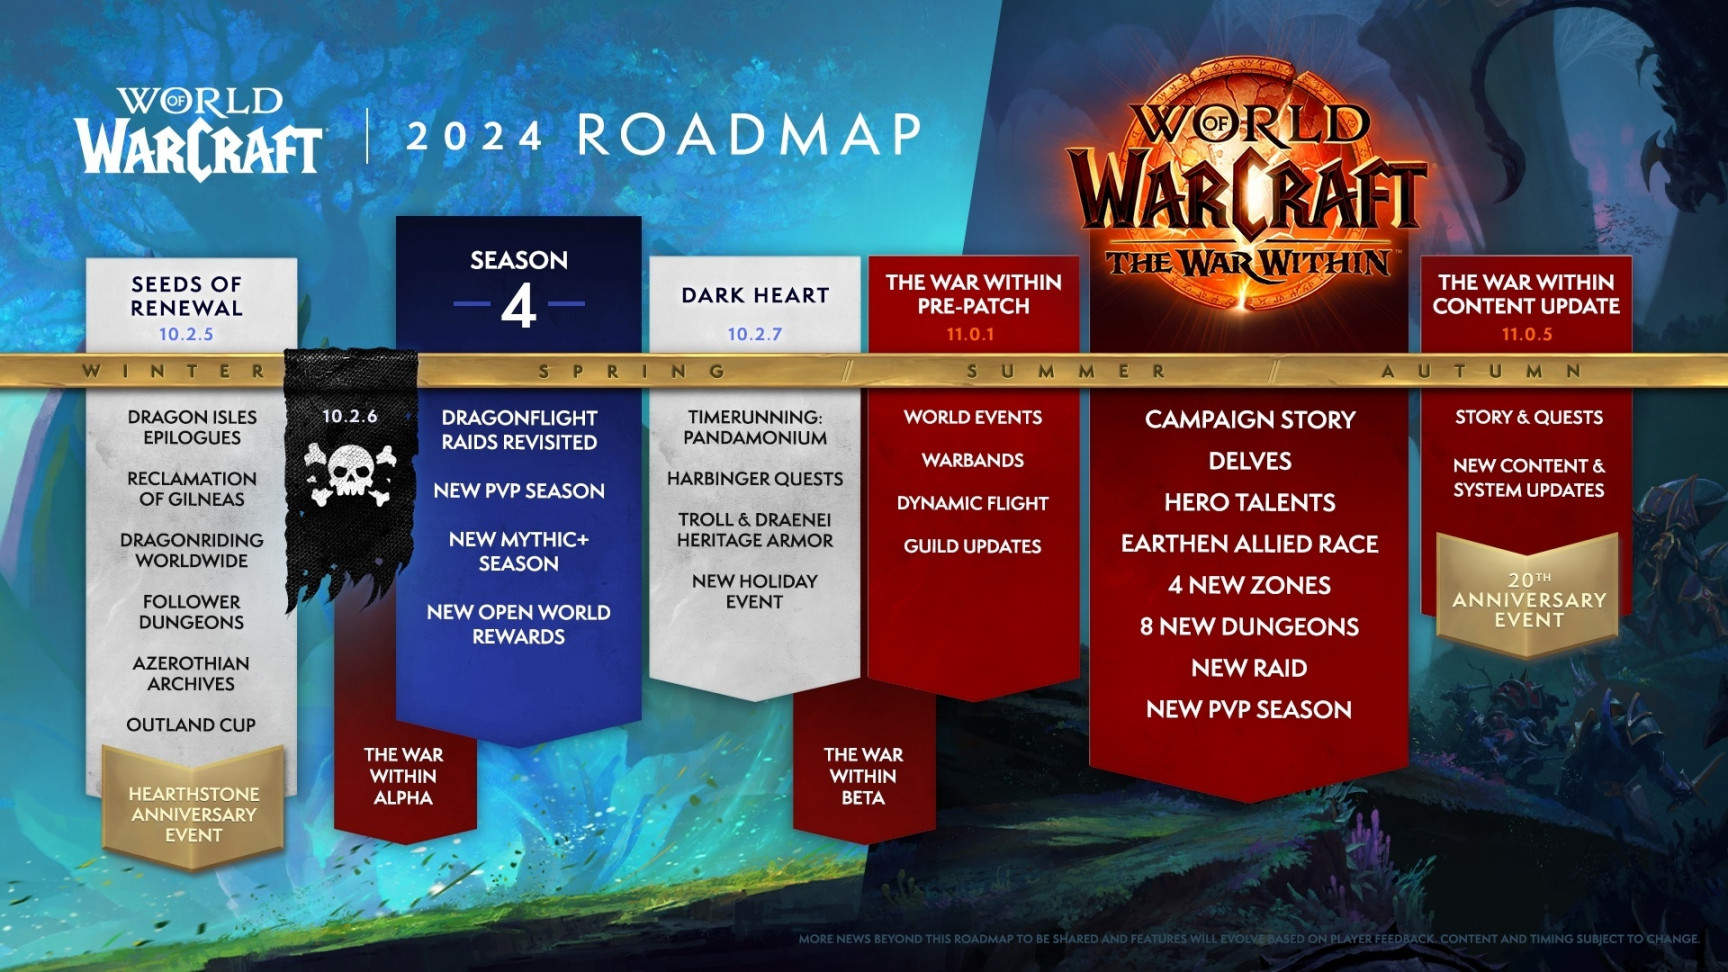 World of Warcraft Roadmap Revealed - Wowhead News